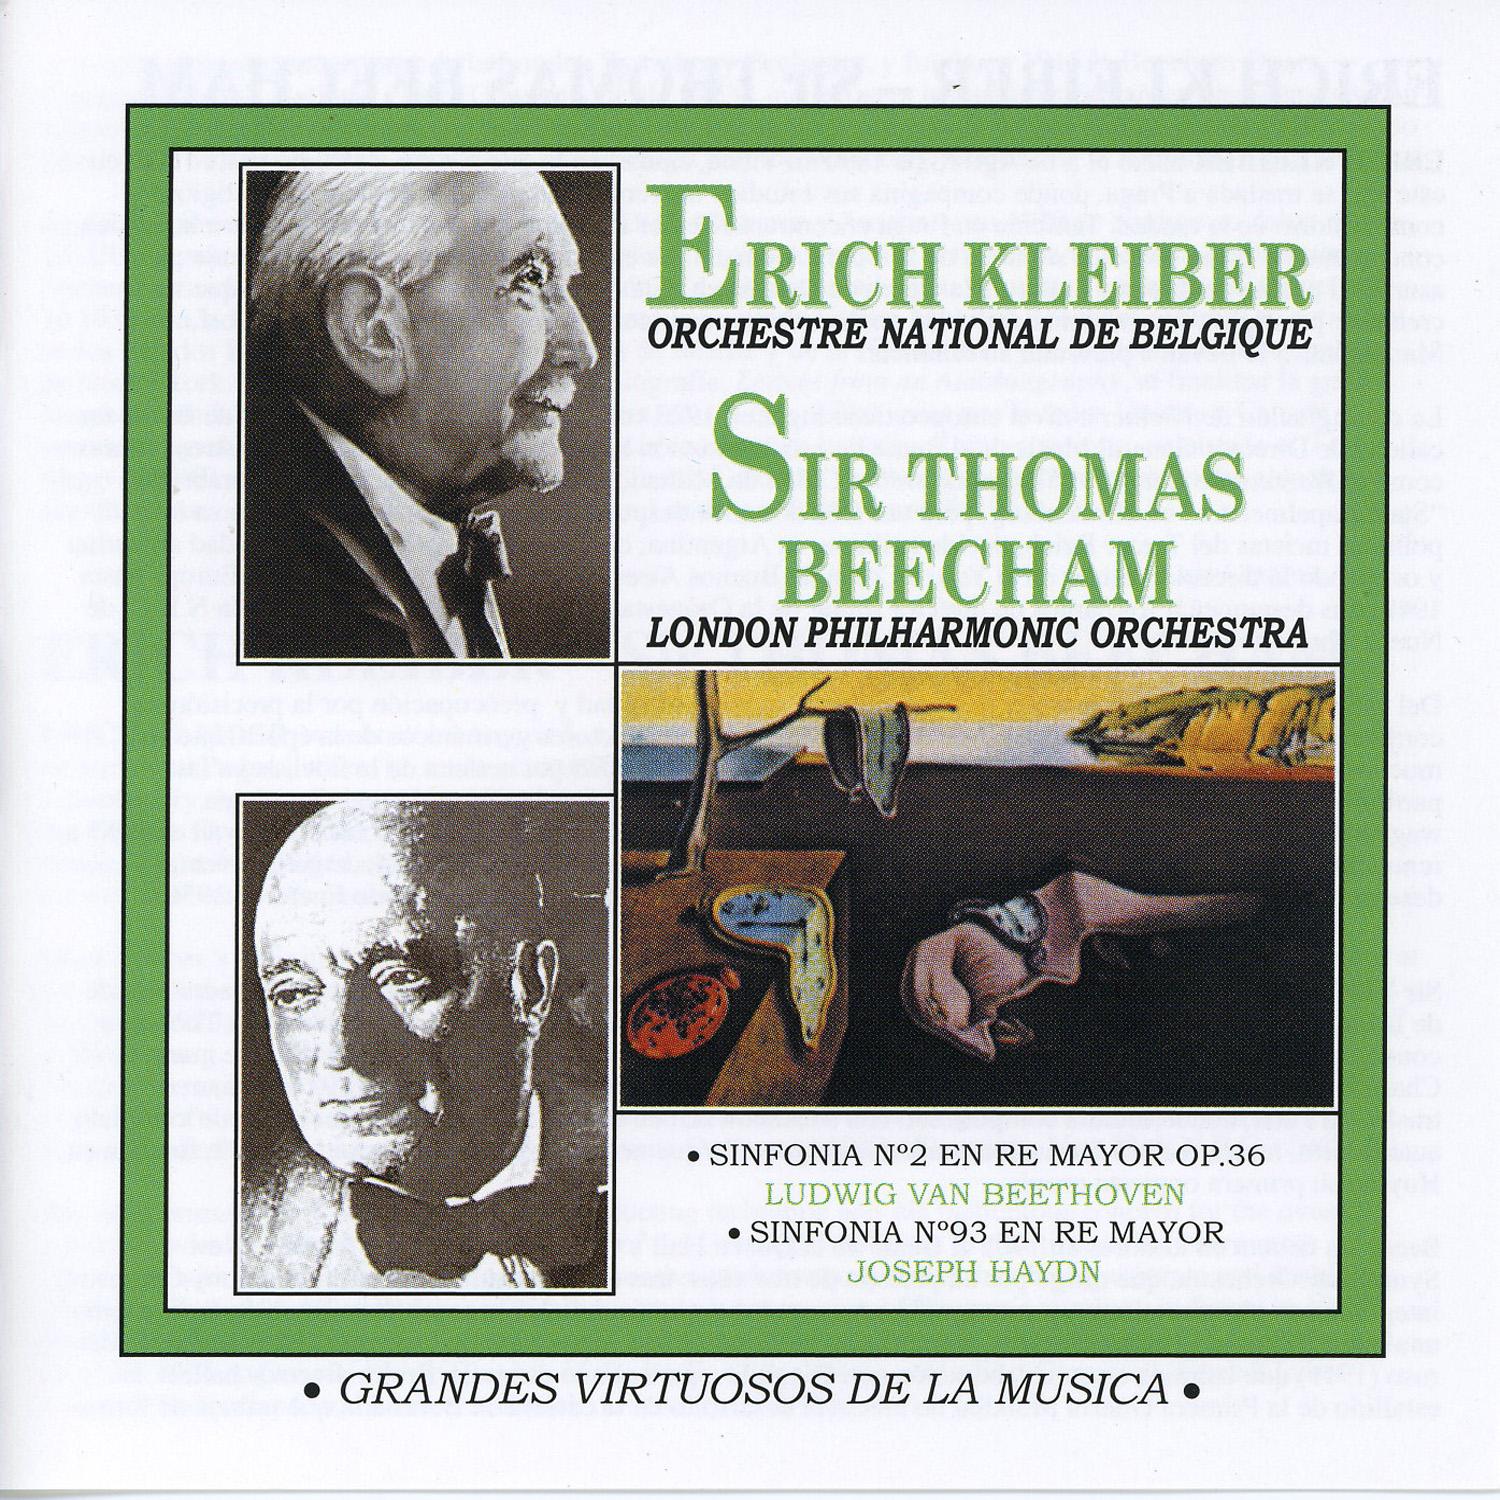 Grandes Virtuosos de la Mu sica: Erich Kleiber y Sir Thomas Beecham